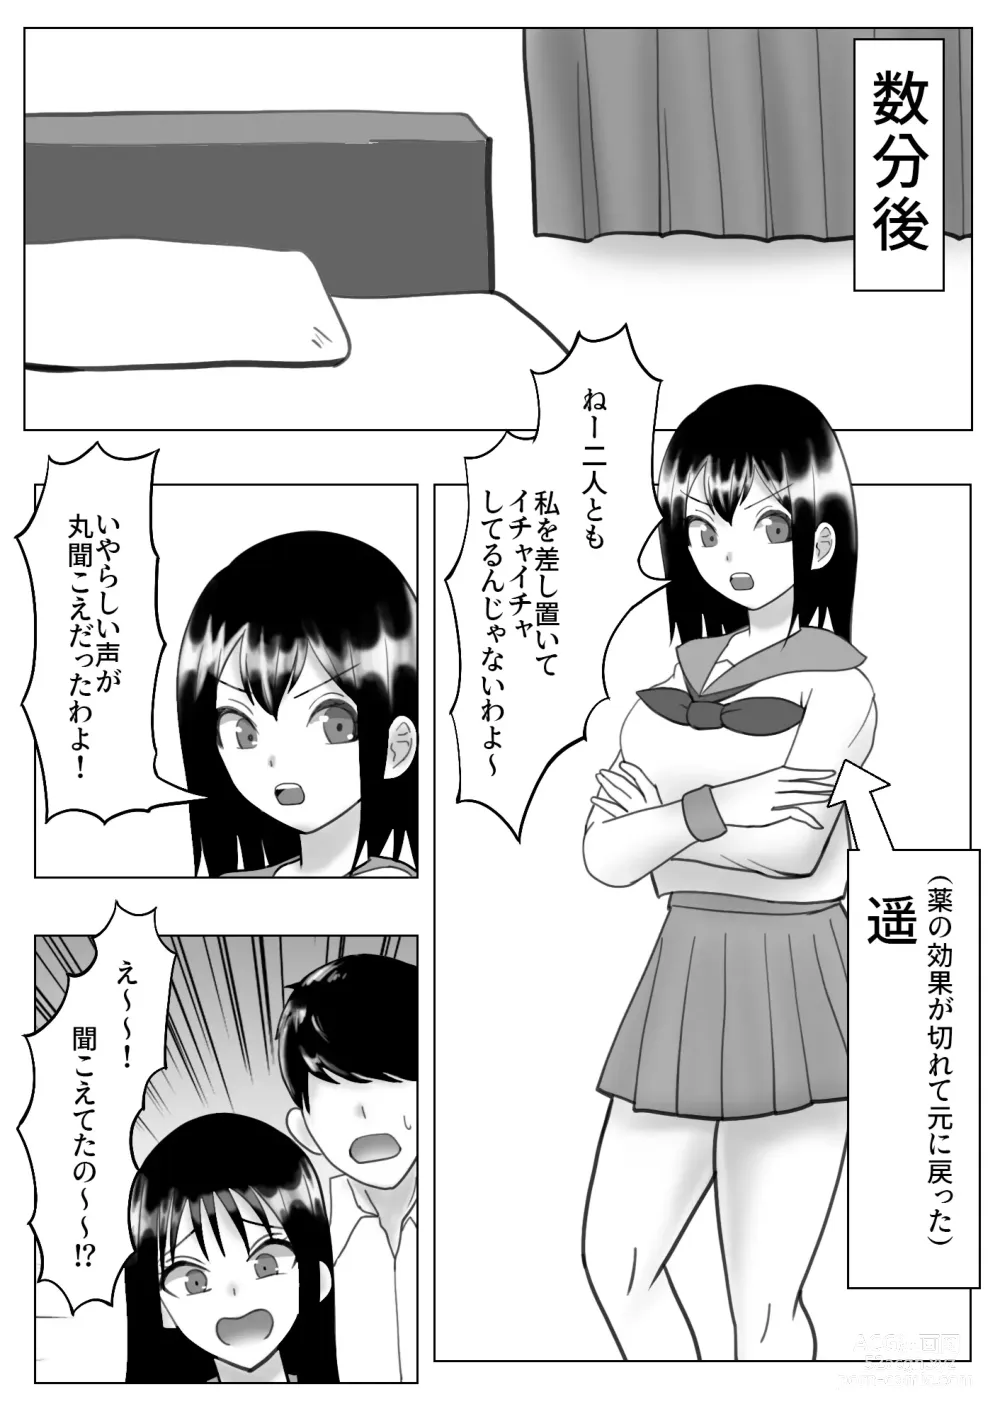 Page 53 of doujinshi Kawa-ka dorinku kanojo no kawa de itazura